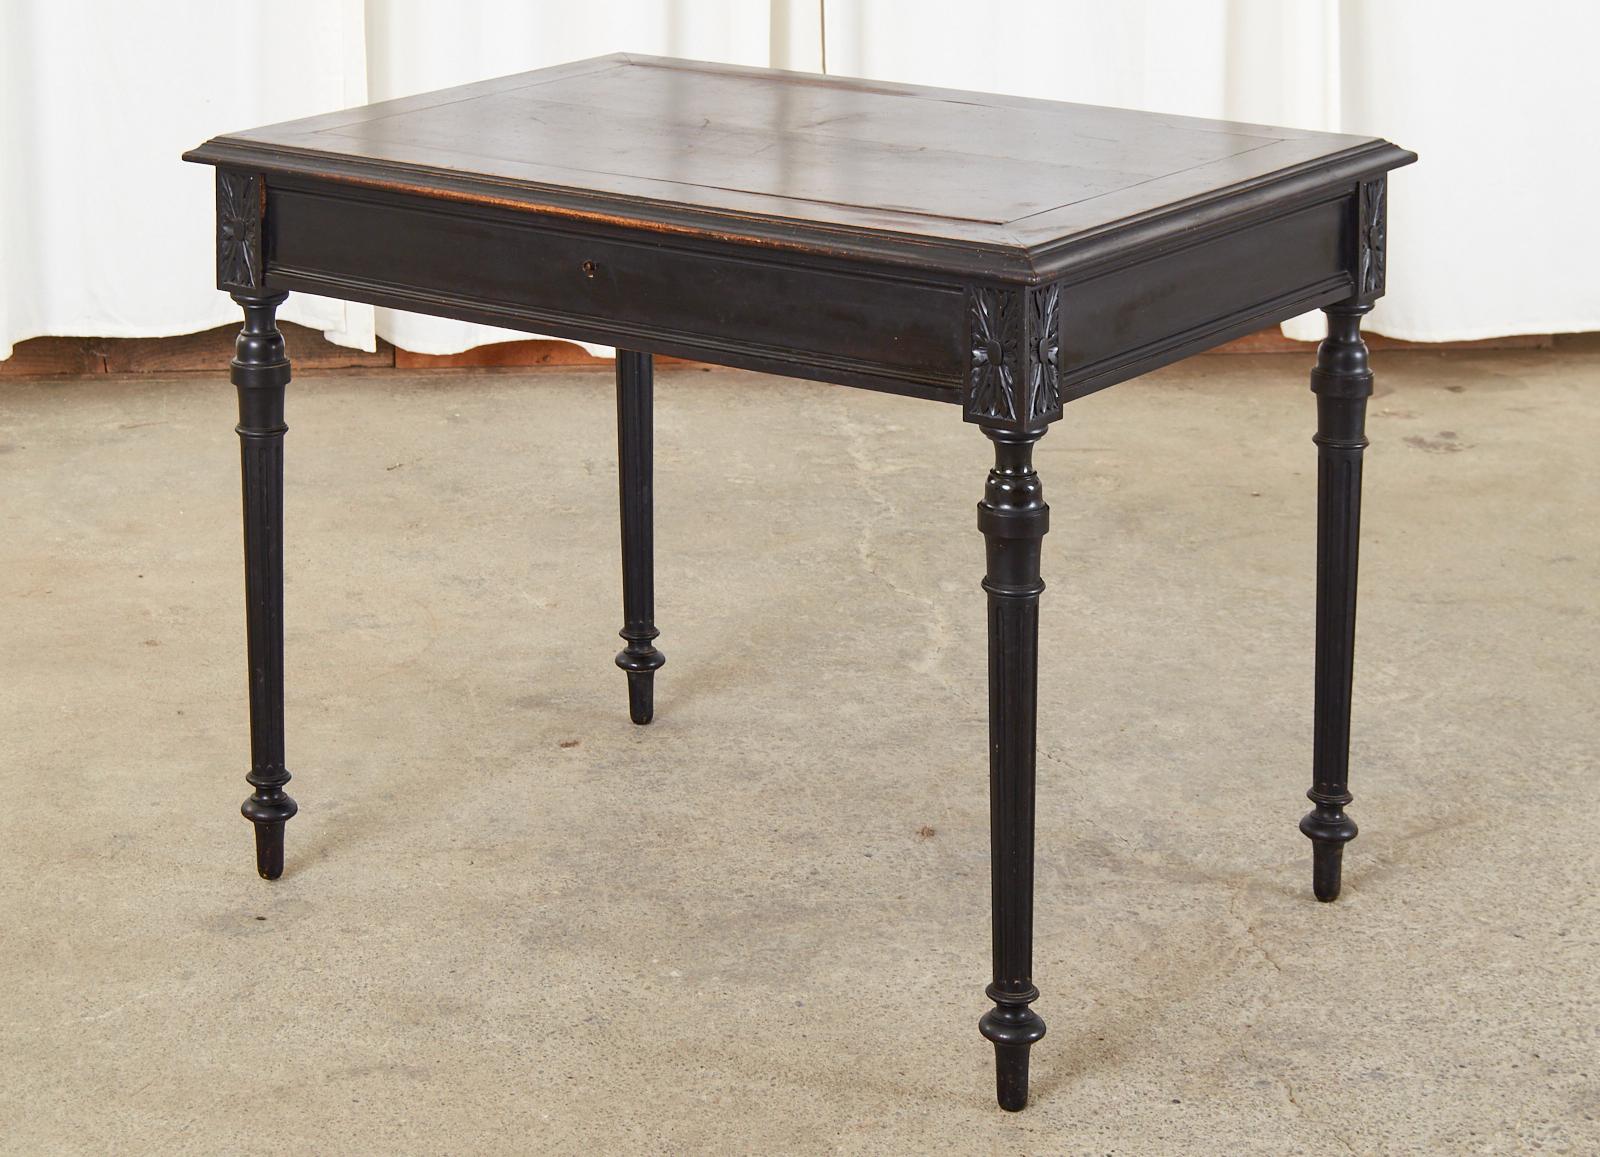 Dramatique petite table à écrire ou bureau de dame français, laqué noir et ébonisé. Réalisé dans le goût néoclassique Louis XVI avec un design simple et épuré et des ornements décoratifs minimaux. Le coffret est doté d'un bord en ogive sur le dessus